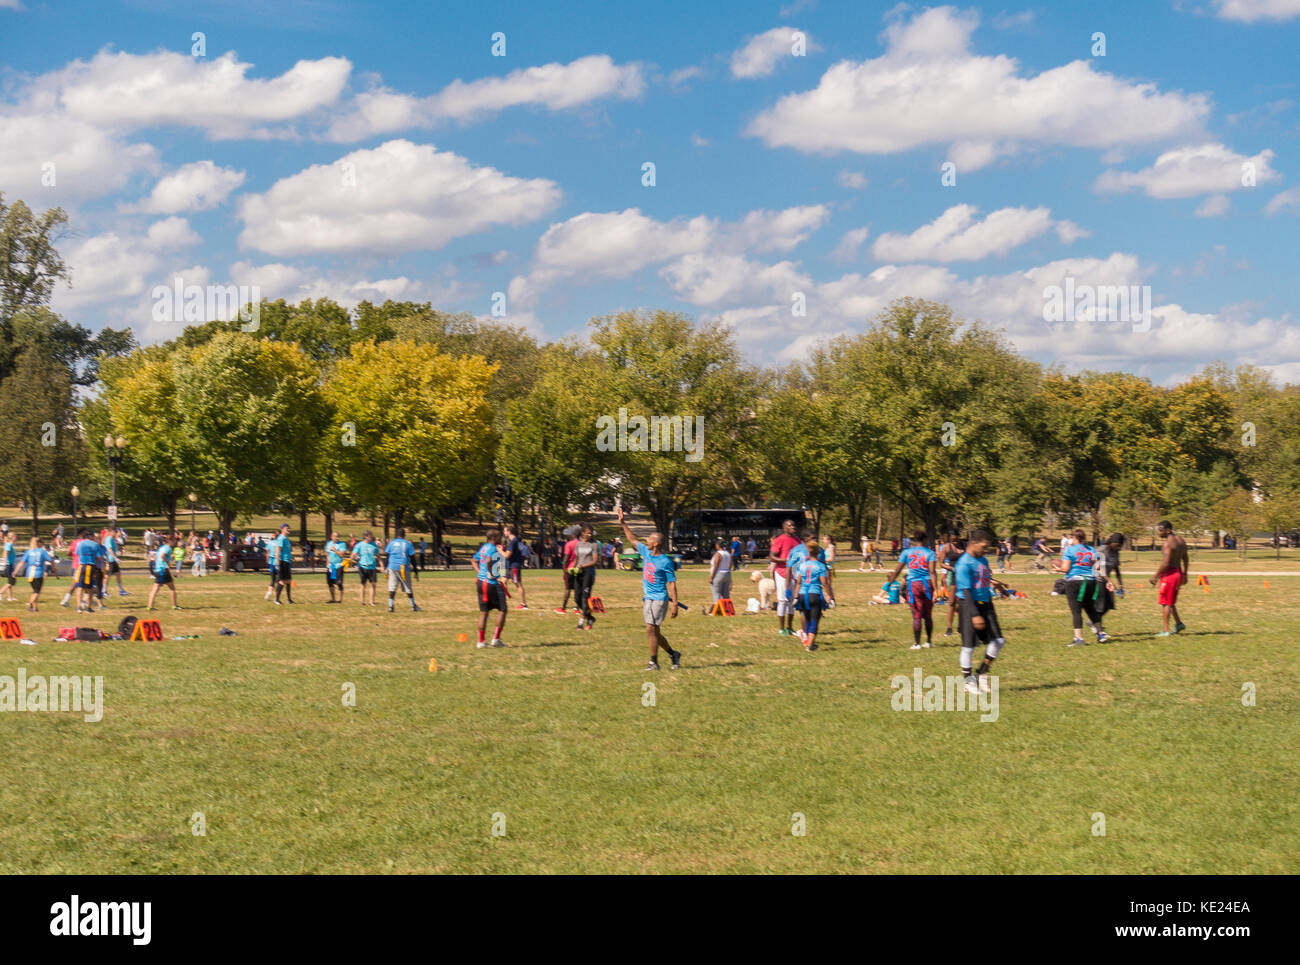 WASHINGTON, DC, USA - Flag football game on National Mall. Stock Photo